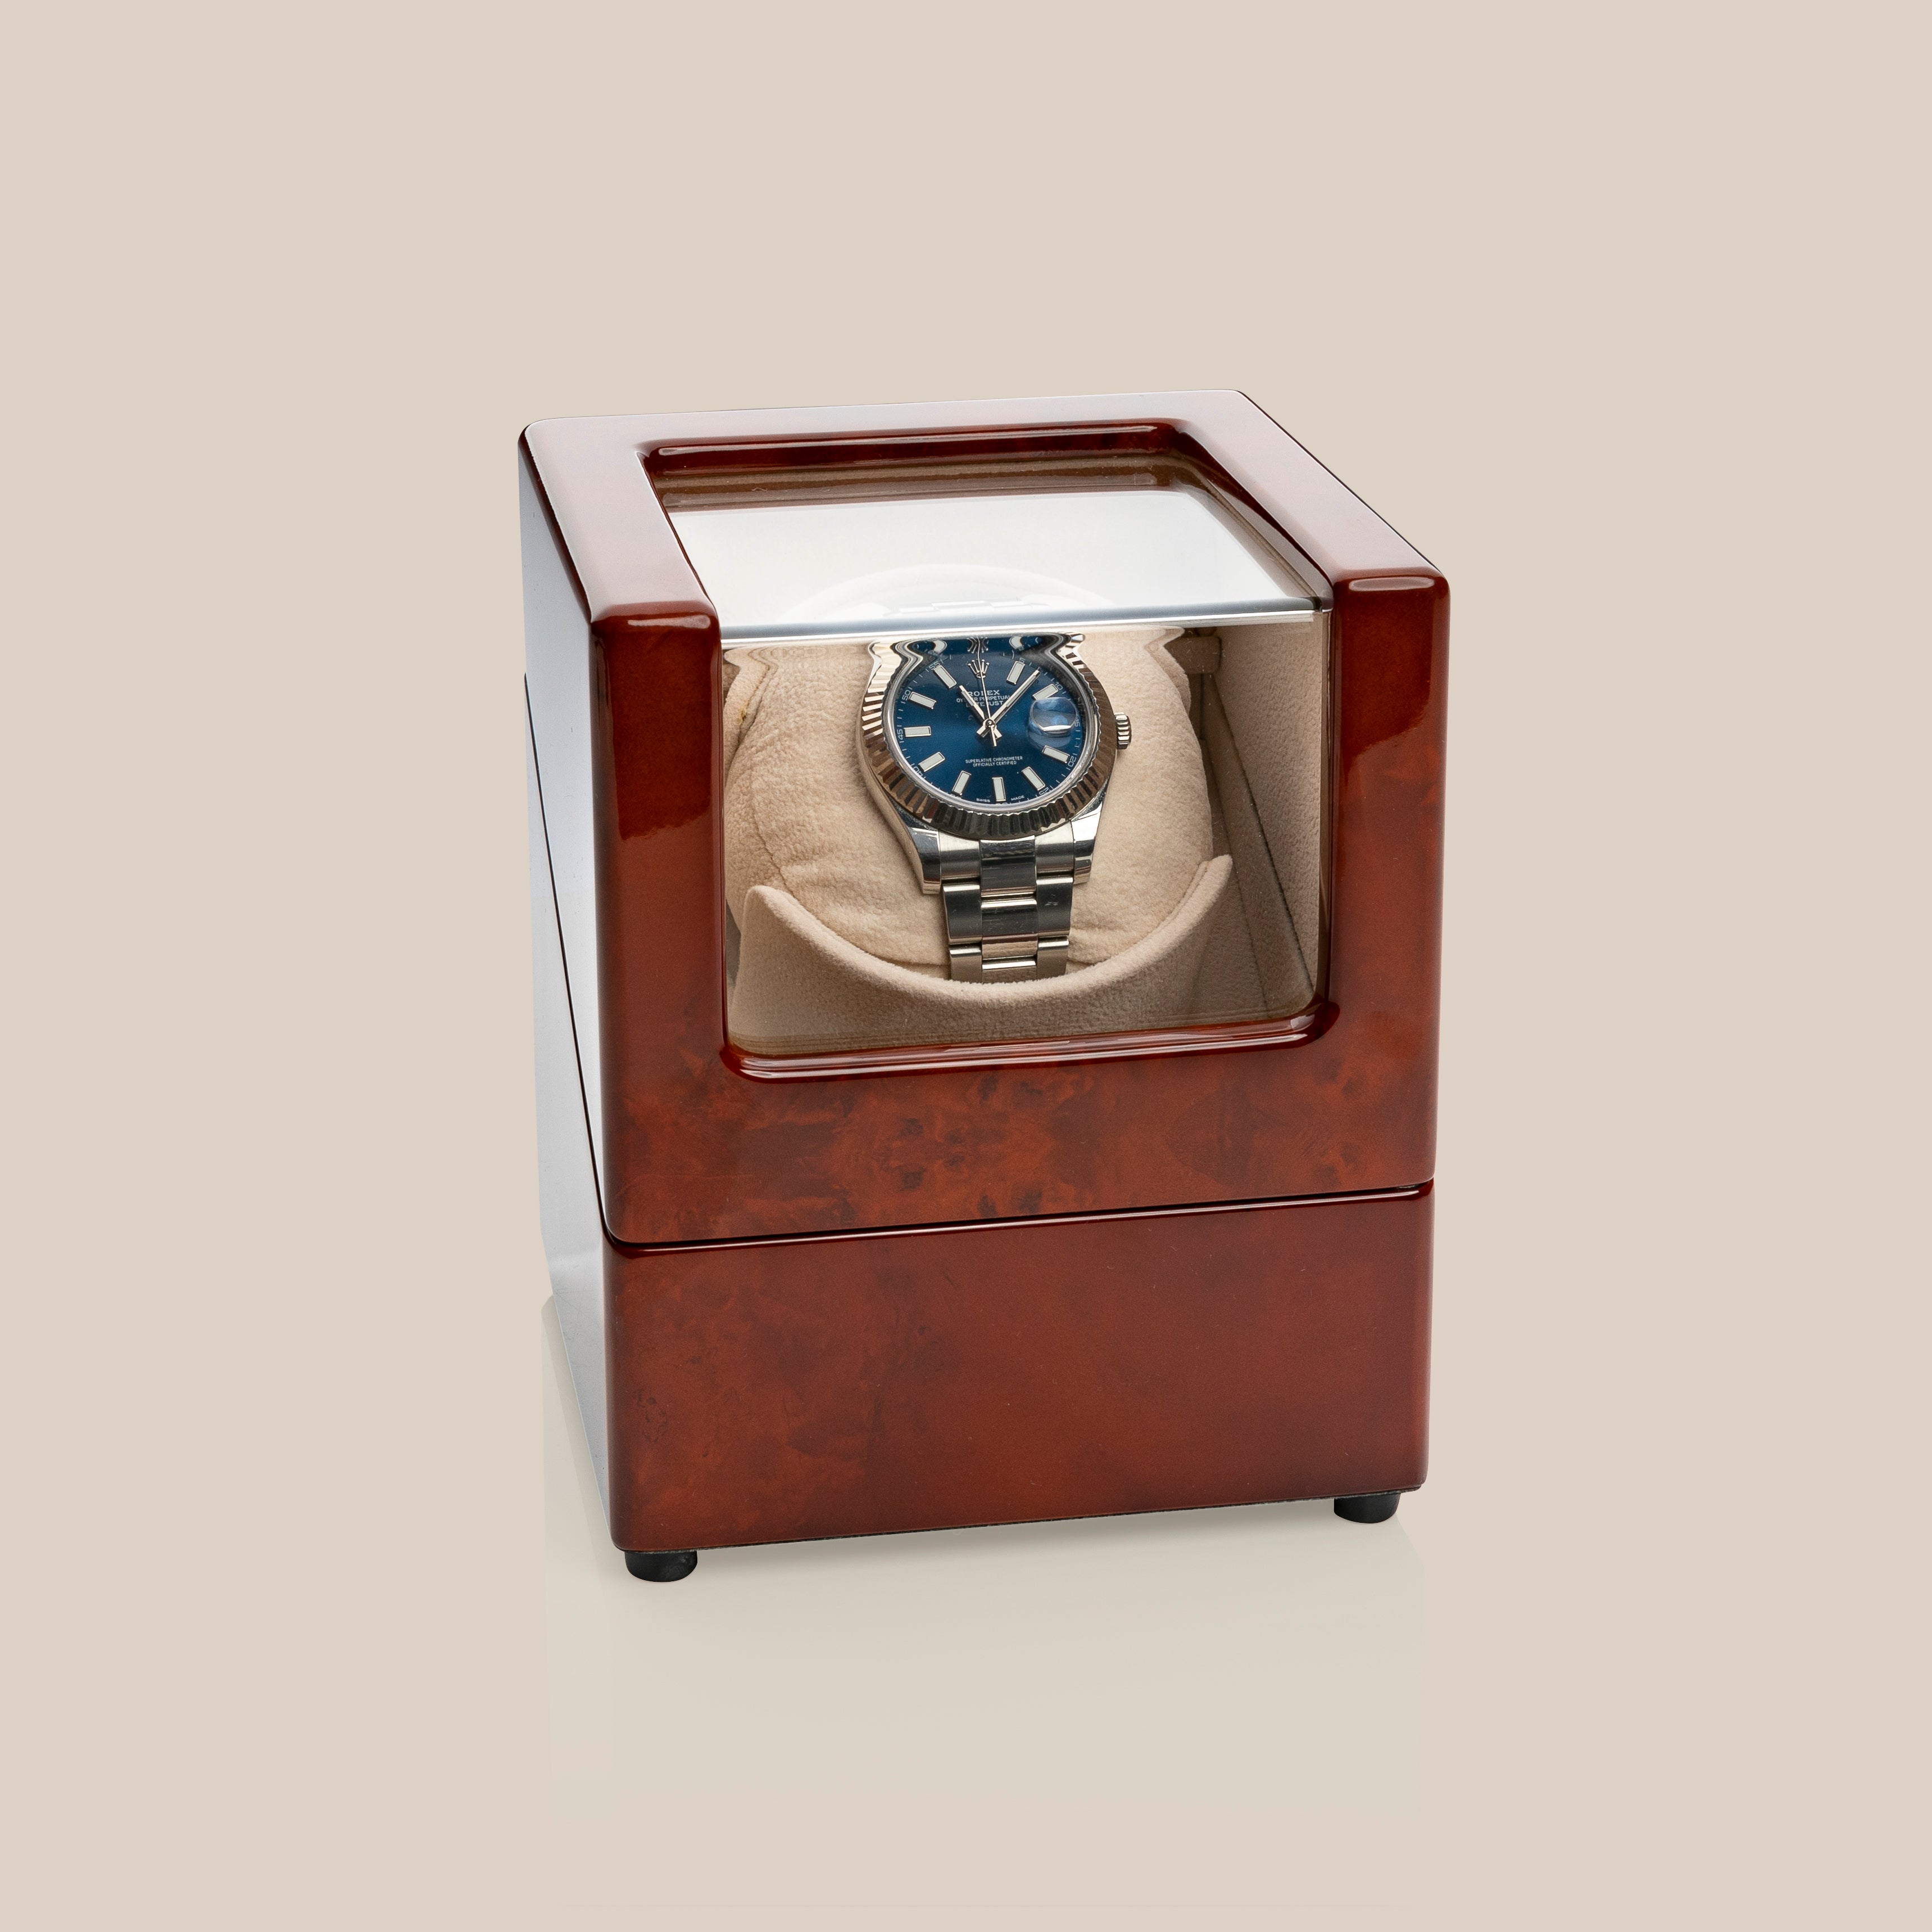 Vitrina móvil WW78 (marrón/camello) - 1 reloj